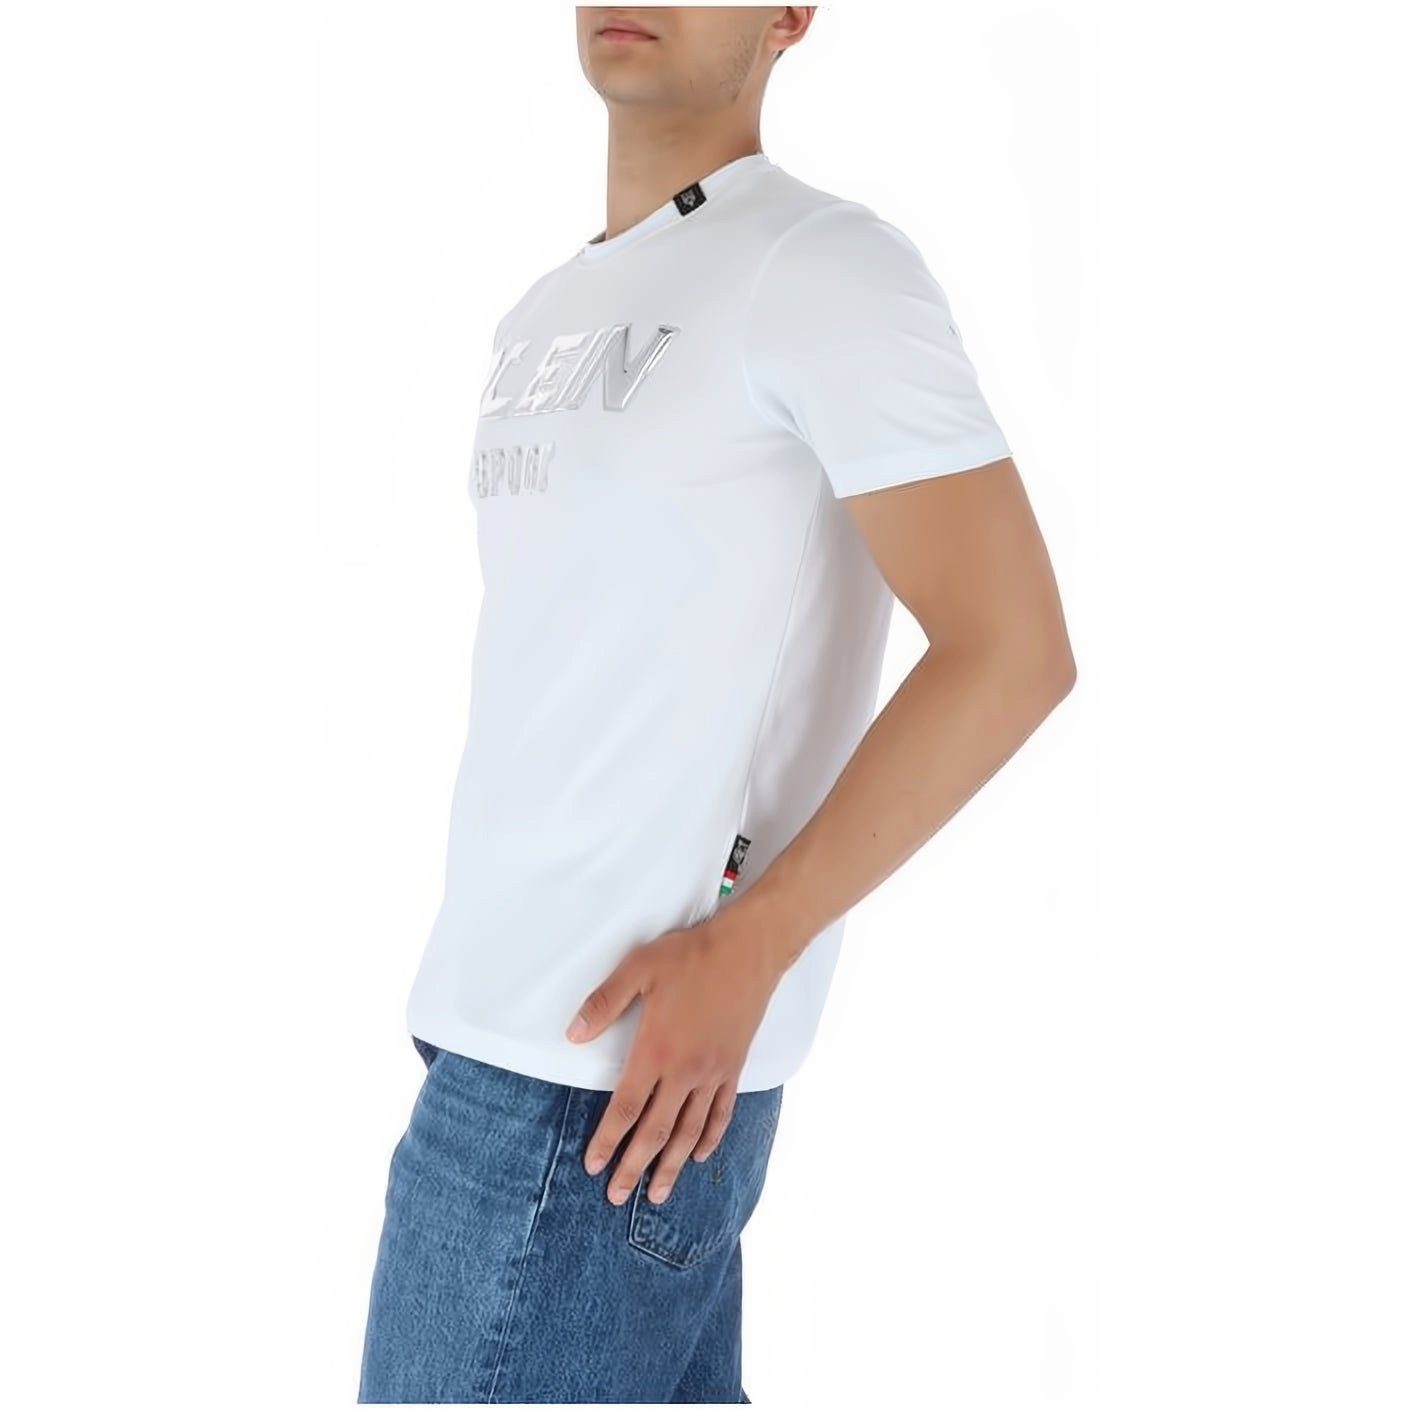 NECK Look, T-Shirt ROUND SPORT vielfältige PLEIN hoher Tragekomfort, Farbauswahl Stylischer